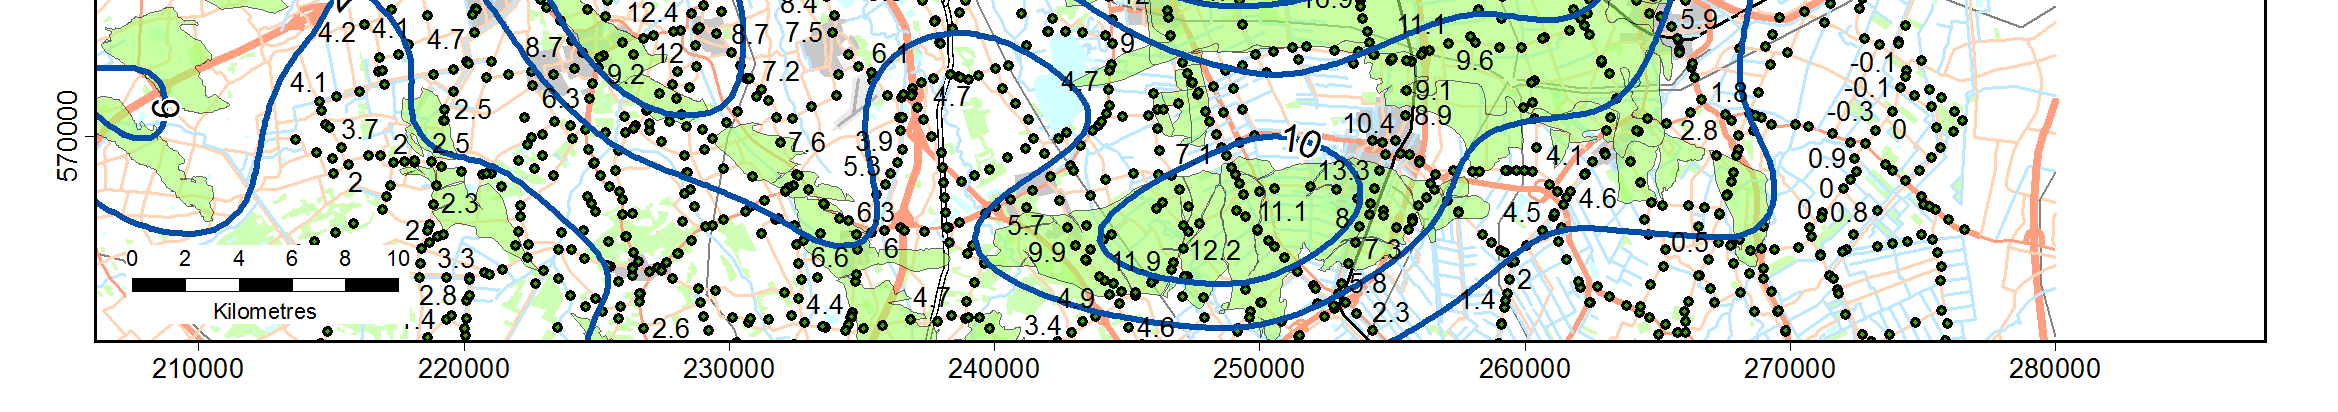 velden (33 cm diepste punt) De volgende figuren tonen de totale bodemdaling berekend met het RTCiM model als gevolg van gaswinning uit het Groningen-veld en naburige